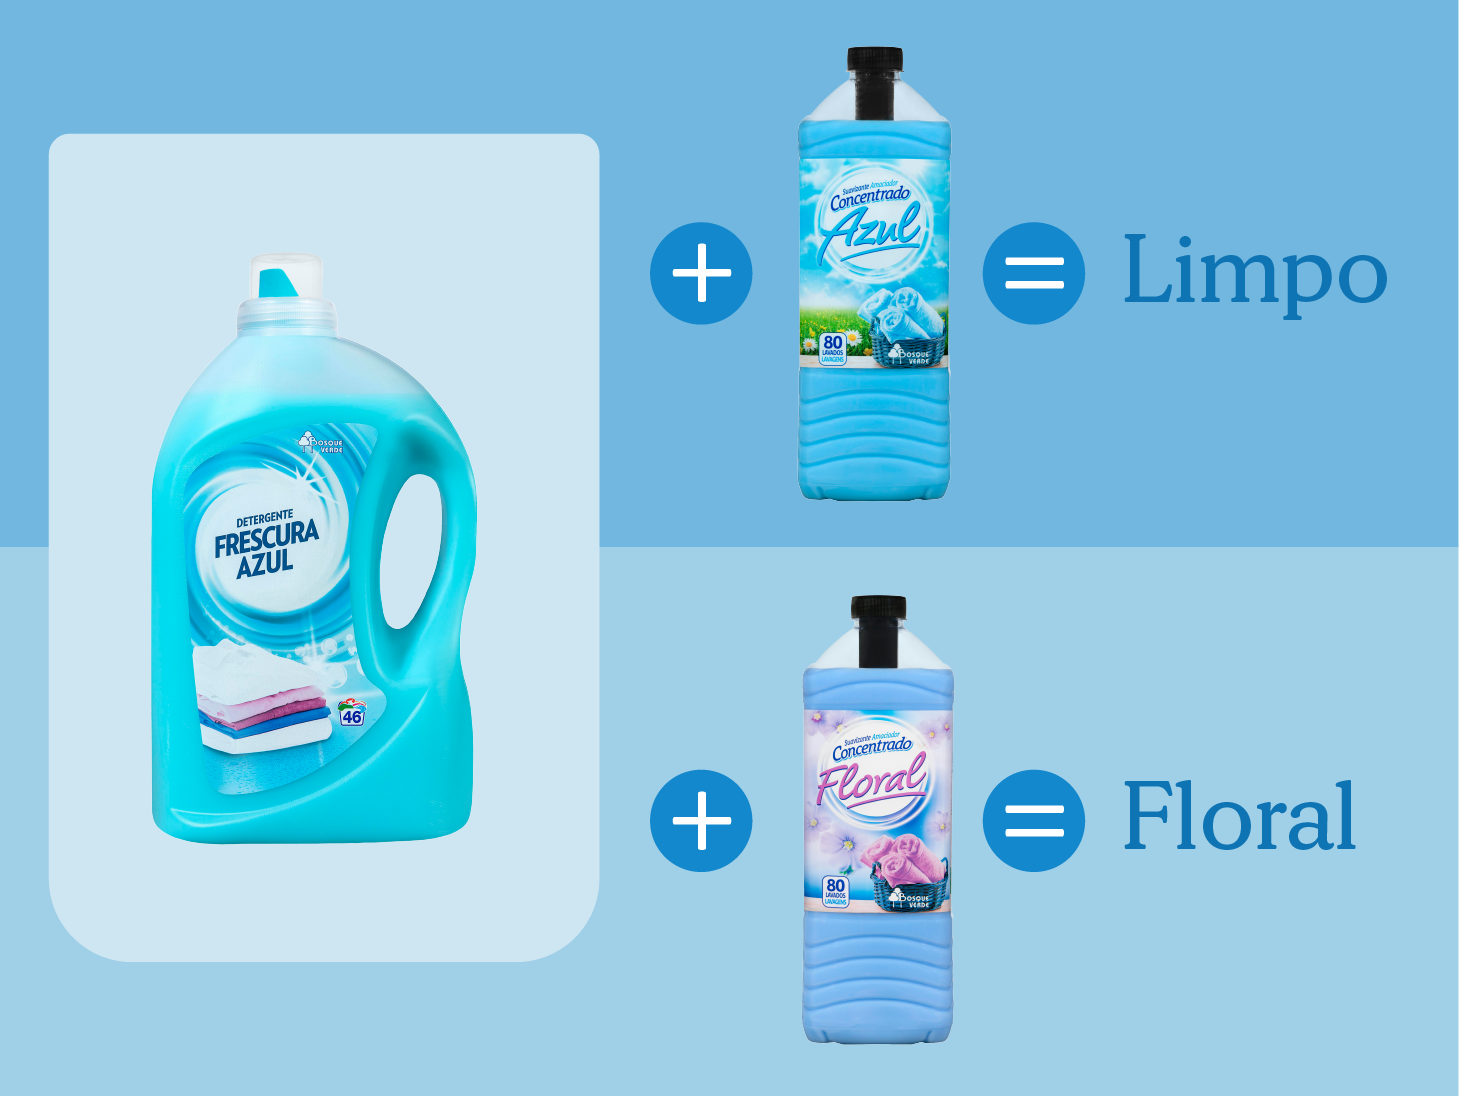 Detergente Frescura Azul Mercadona